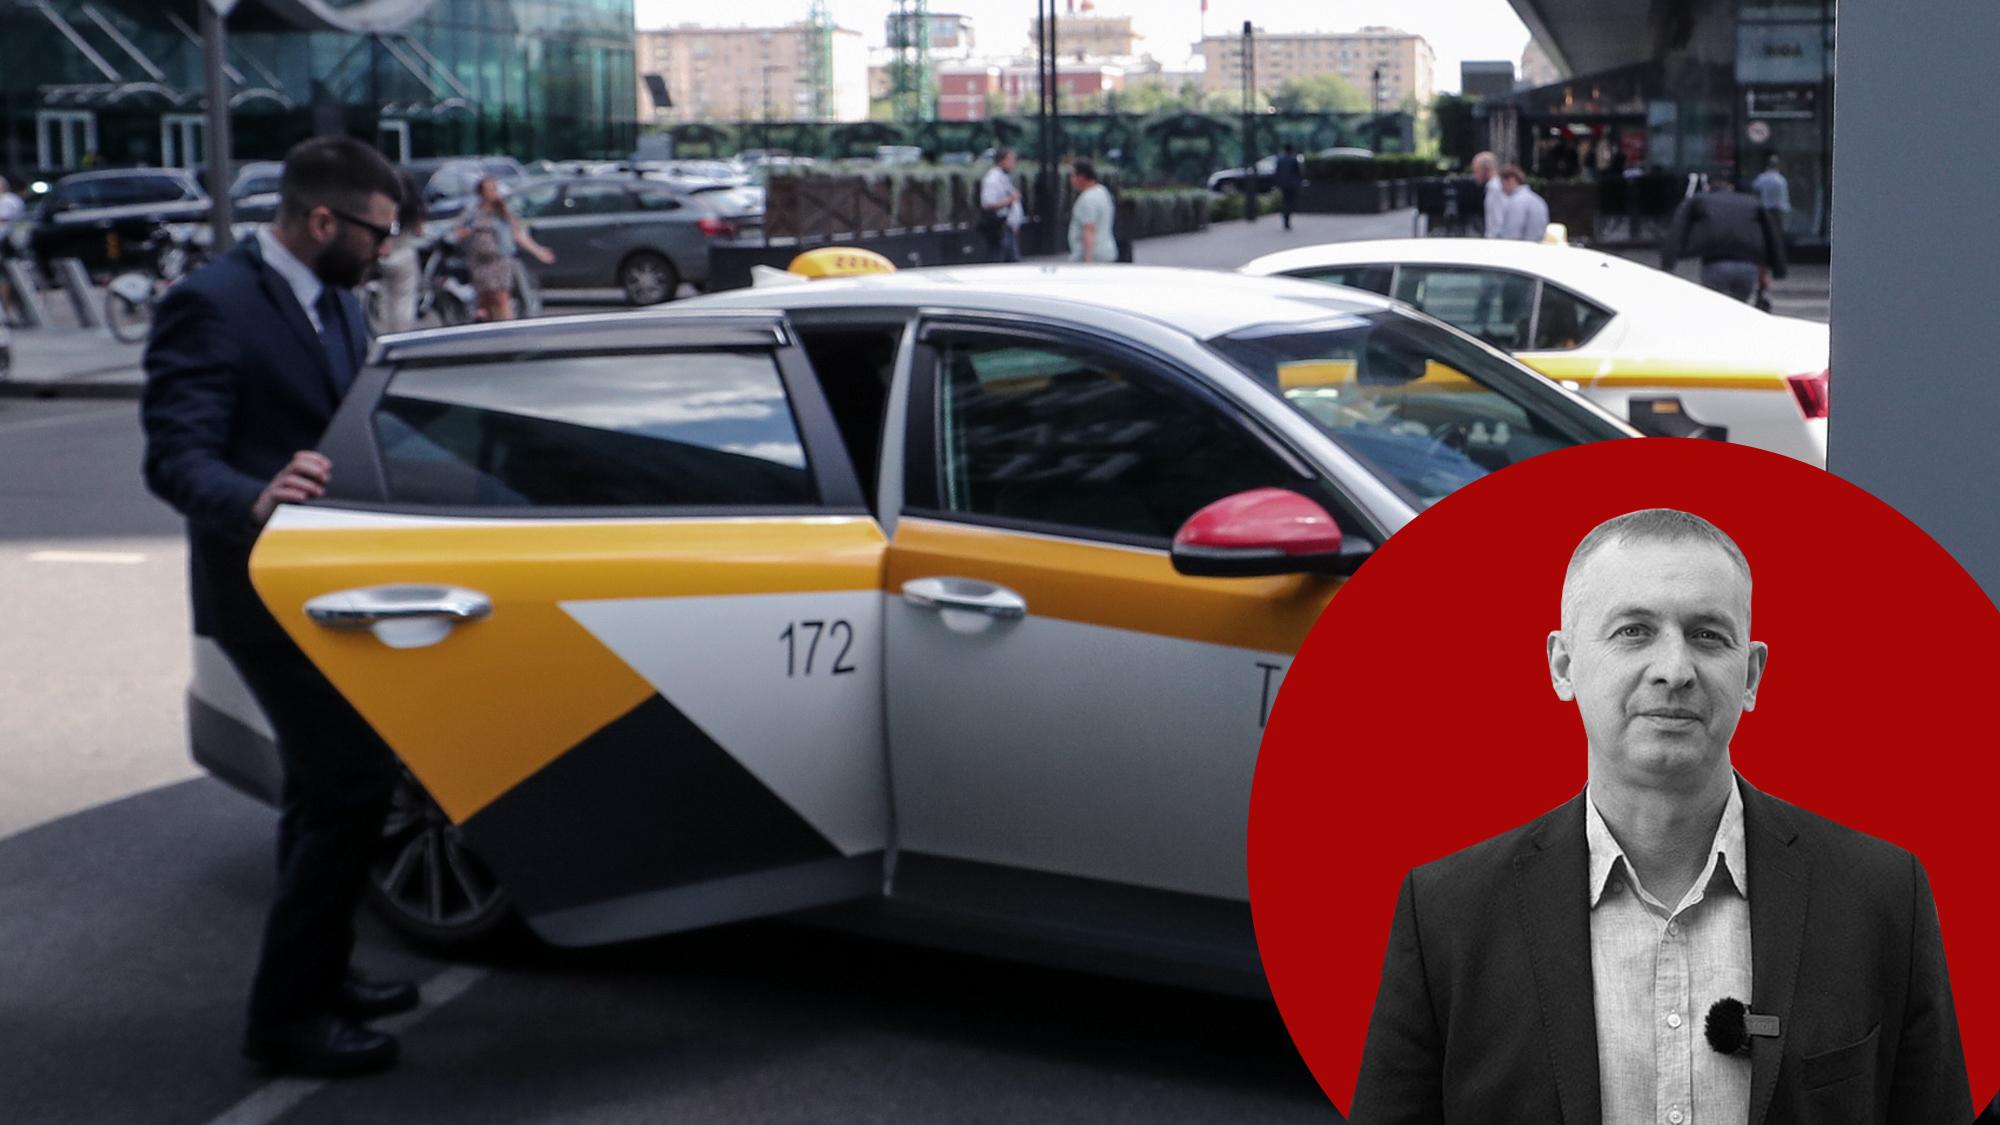 Александр Даванков: Депутатов Госдумы надо на пару дней пересадить на такси